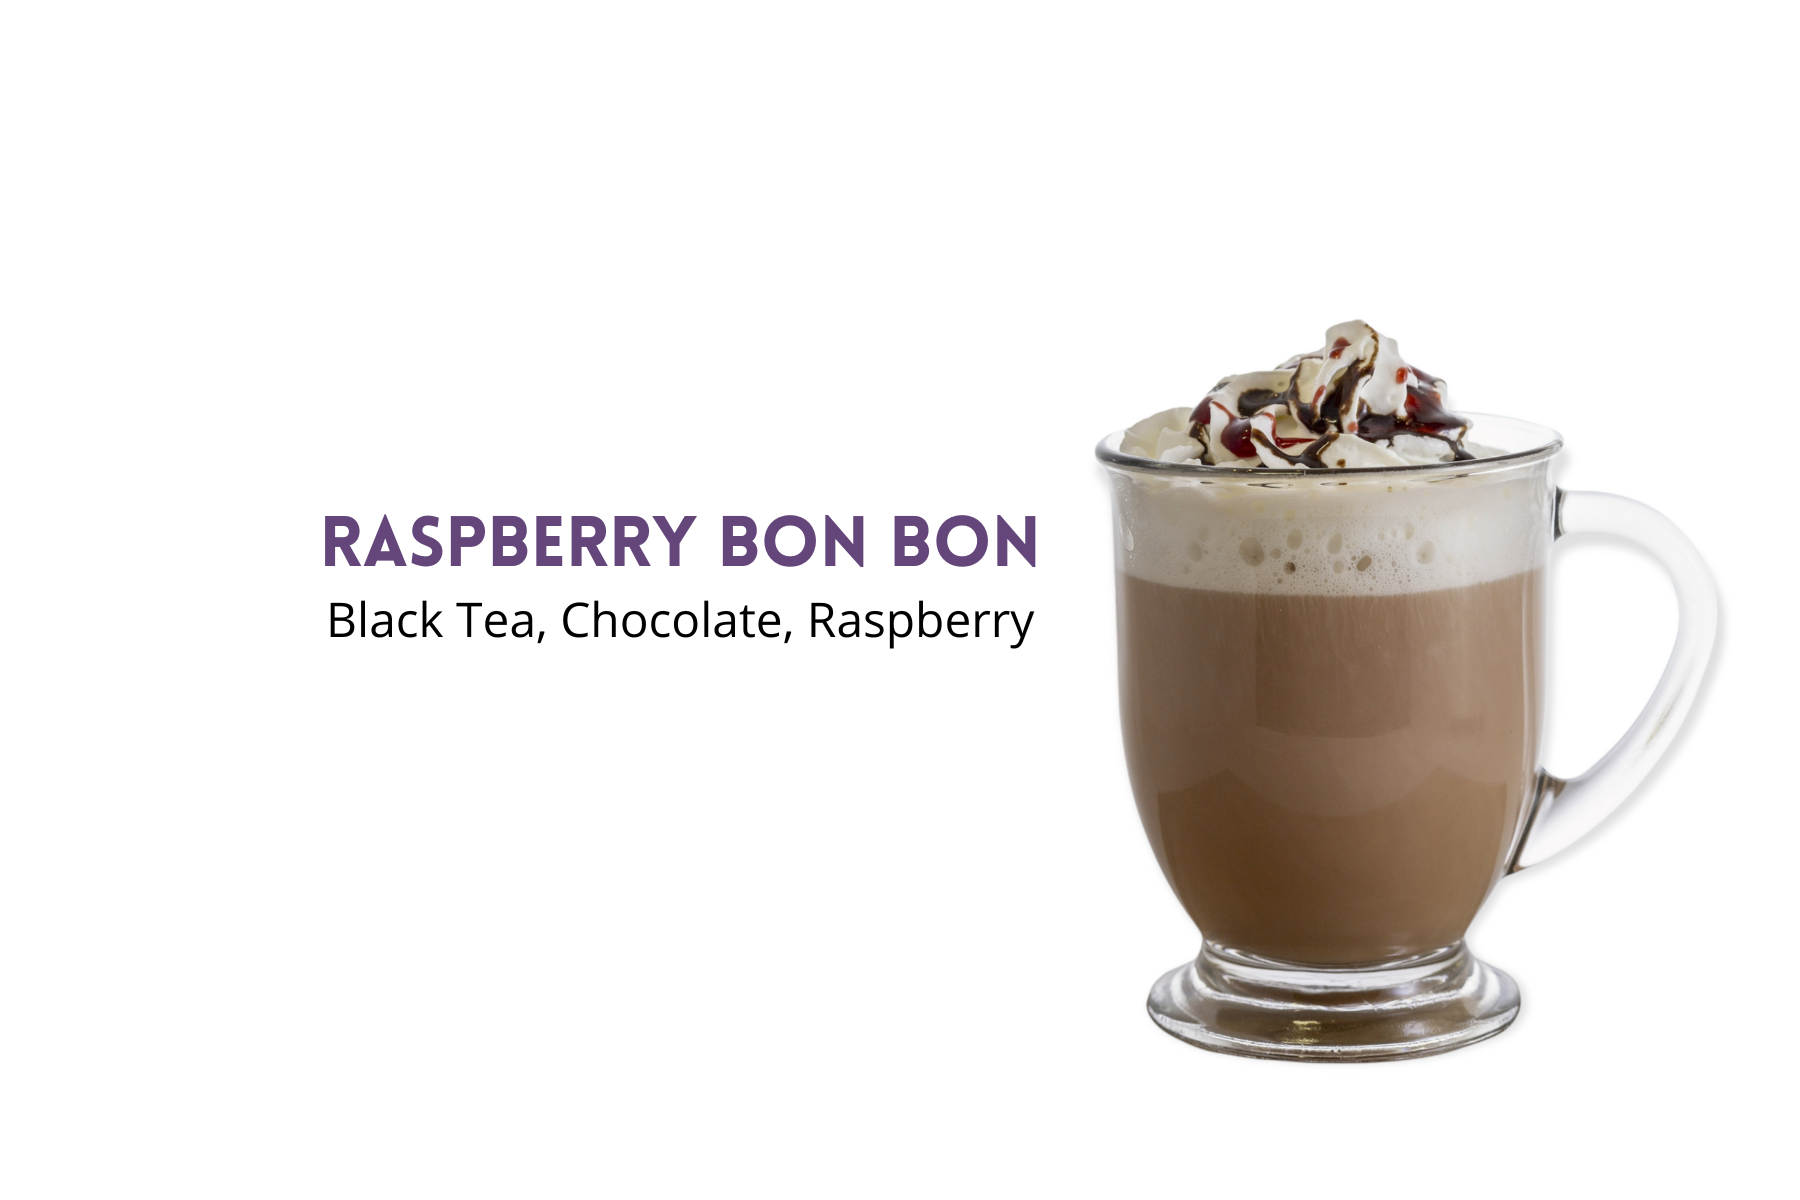 How to Make a Raspberry Bon Bon